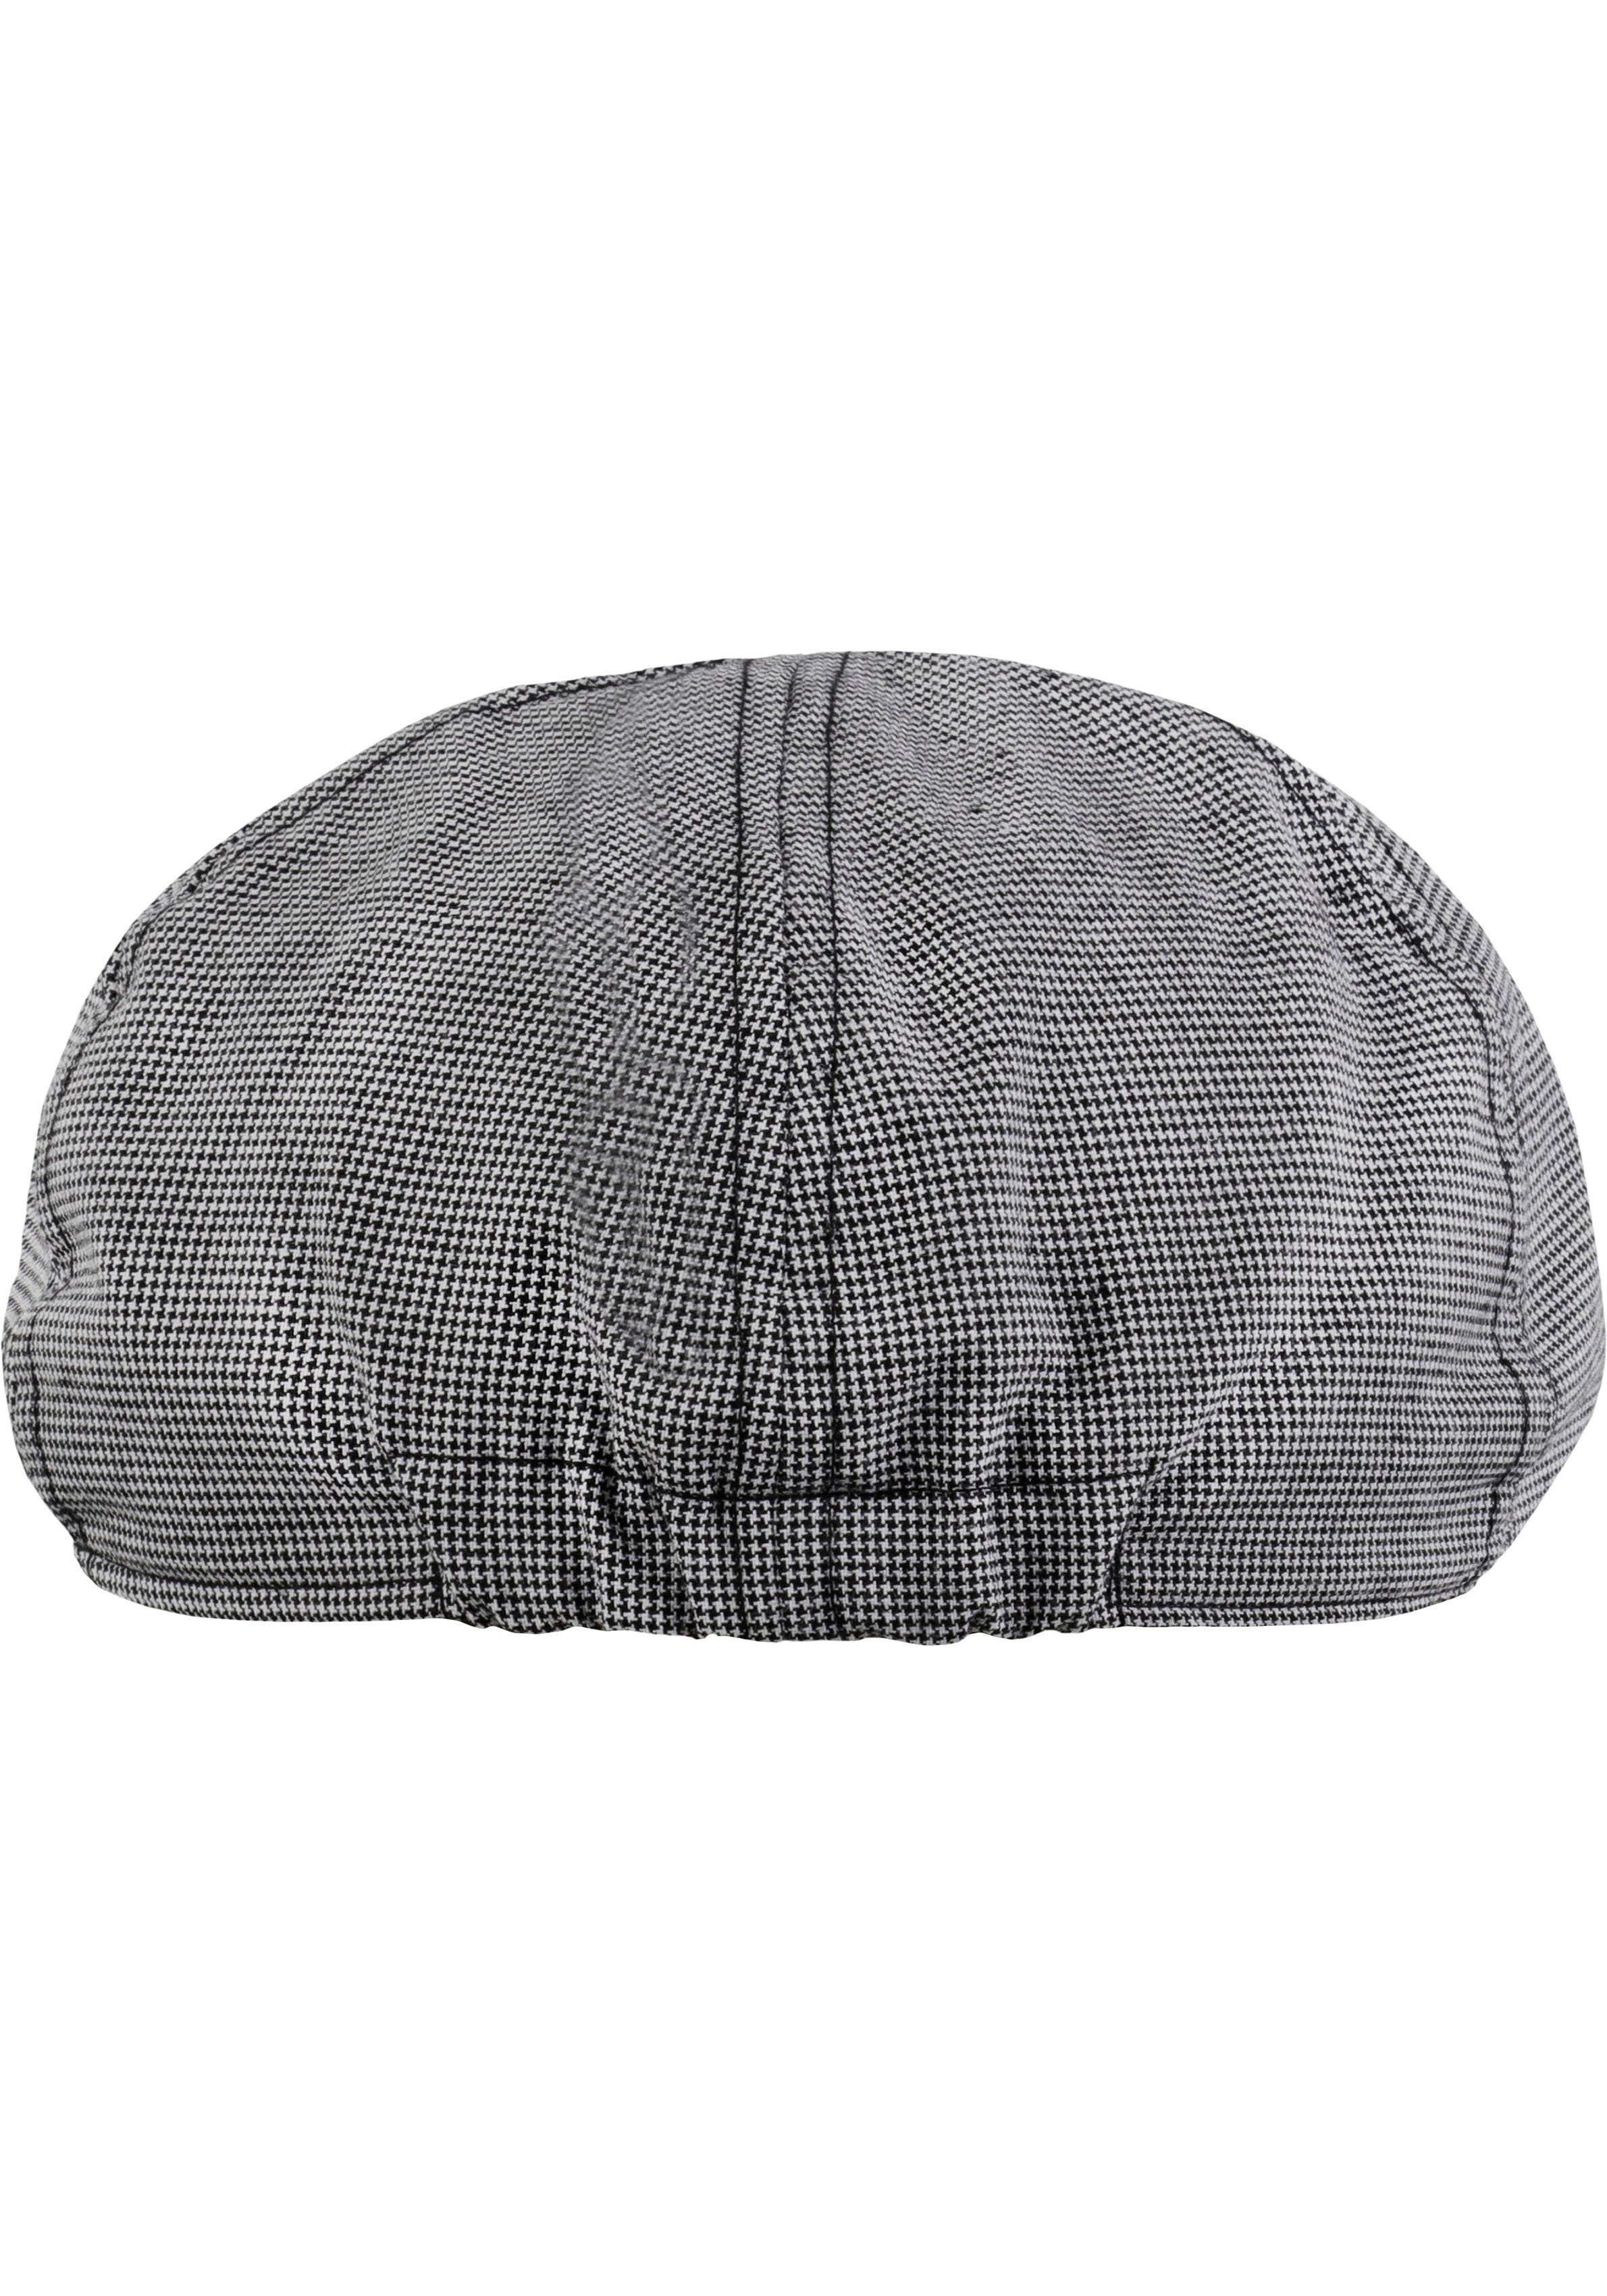 chillouts Schiebermütze Kyoto Hat Cap Karomuster grey mit feinem Flat